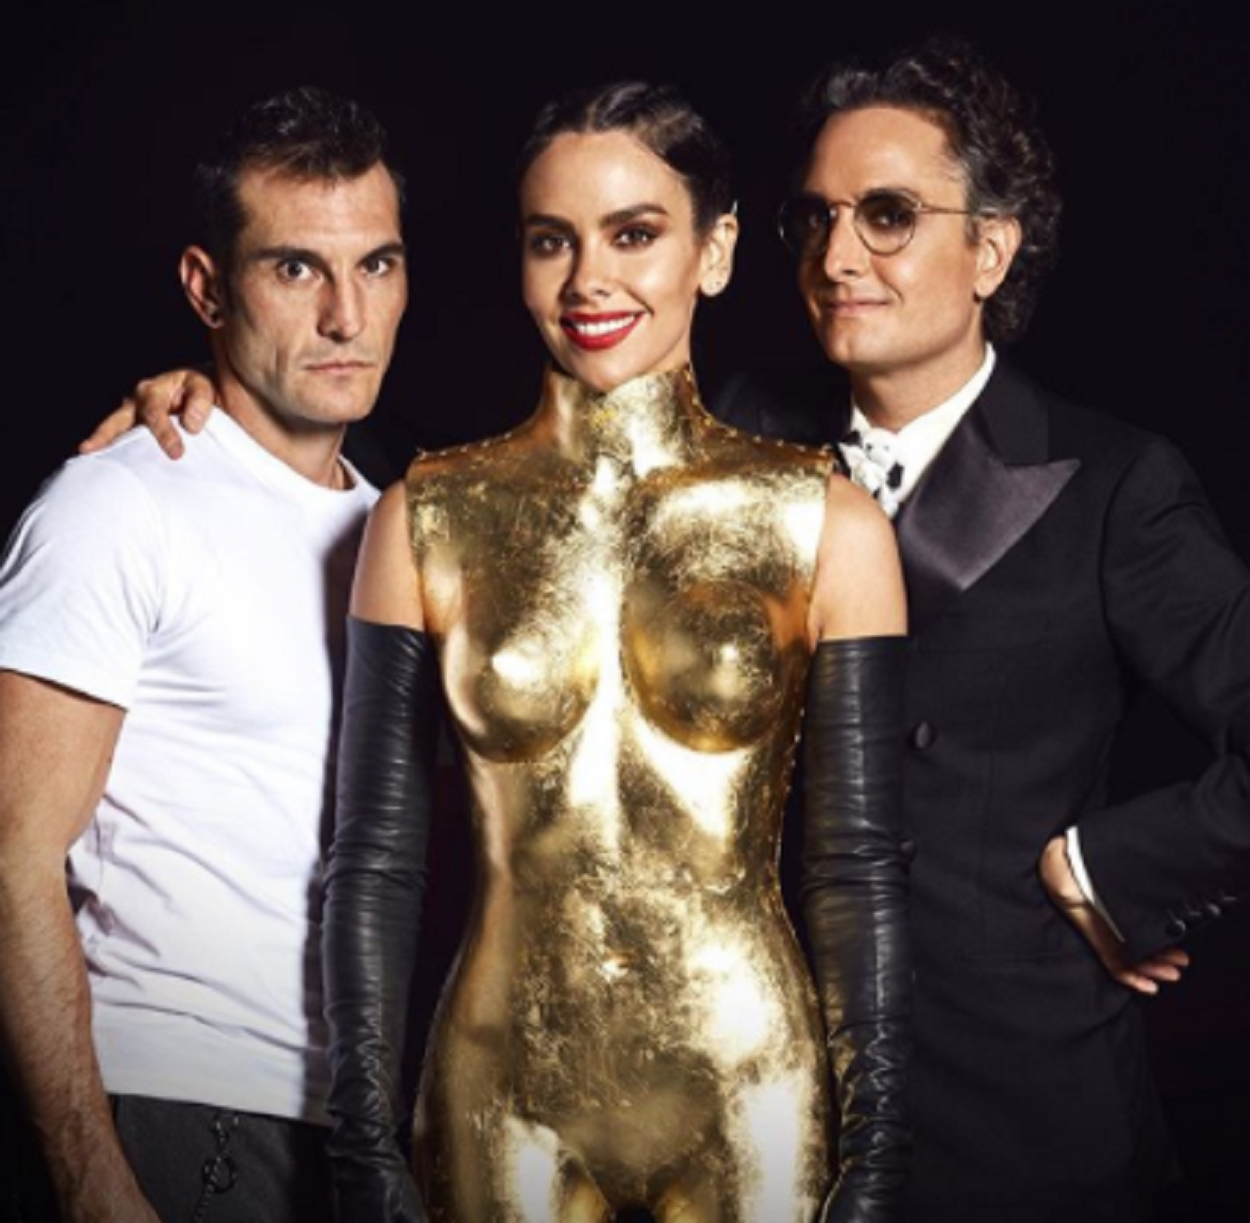 Cristina Pedroche con el traje de Año Nuevo 2020. Fuente: Instagram